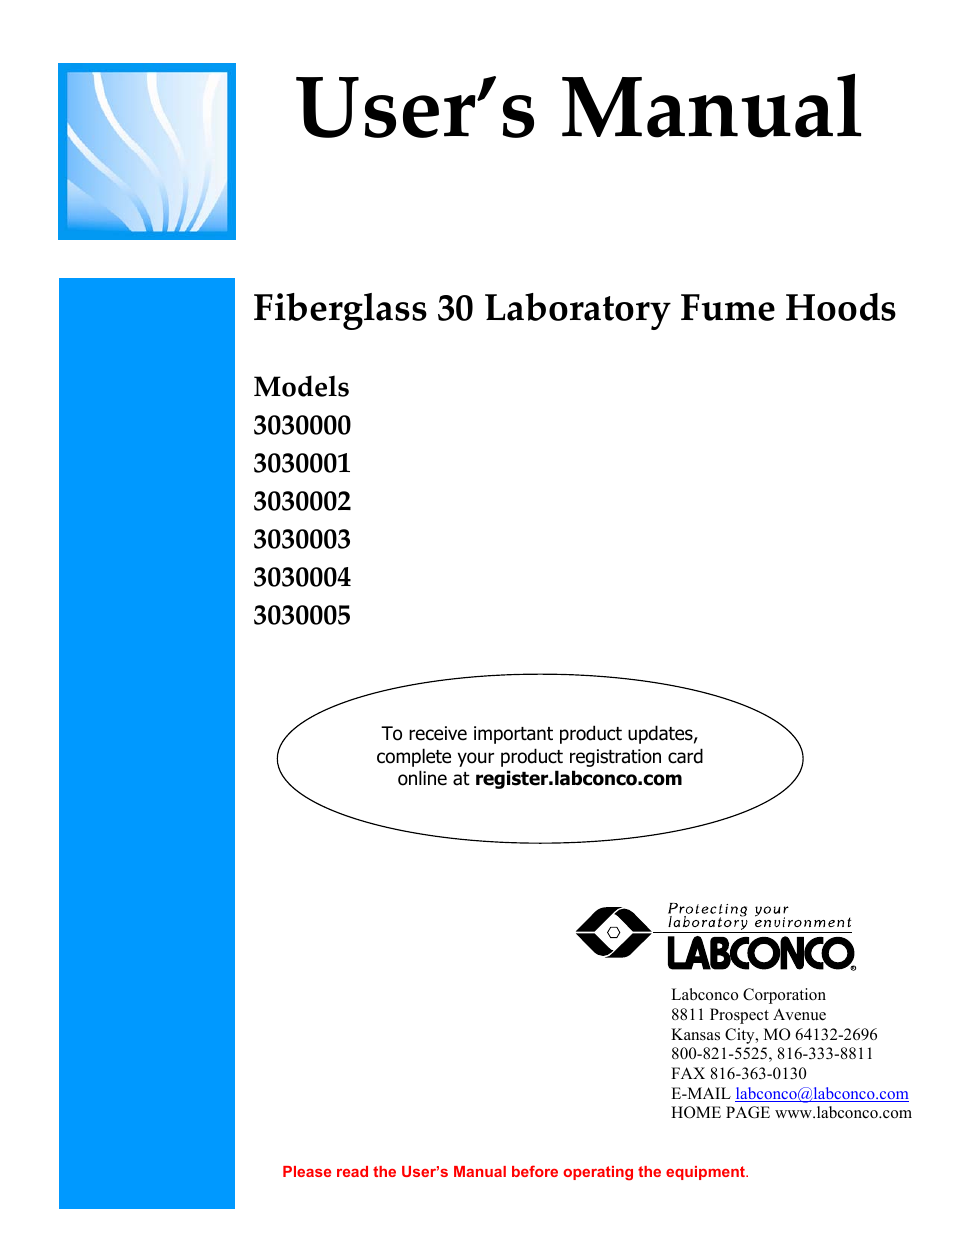 Fiberglass 30 Laboratory Fume Hoods 3030002